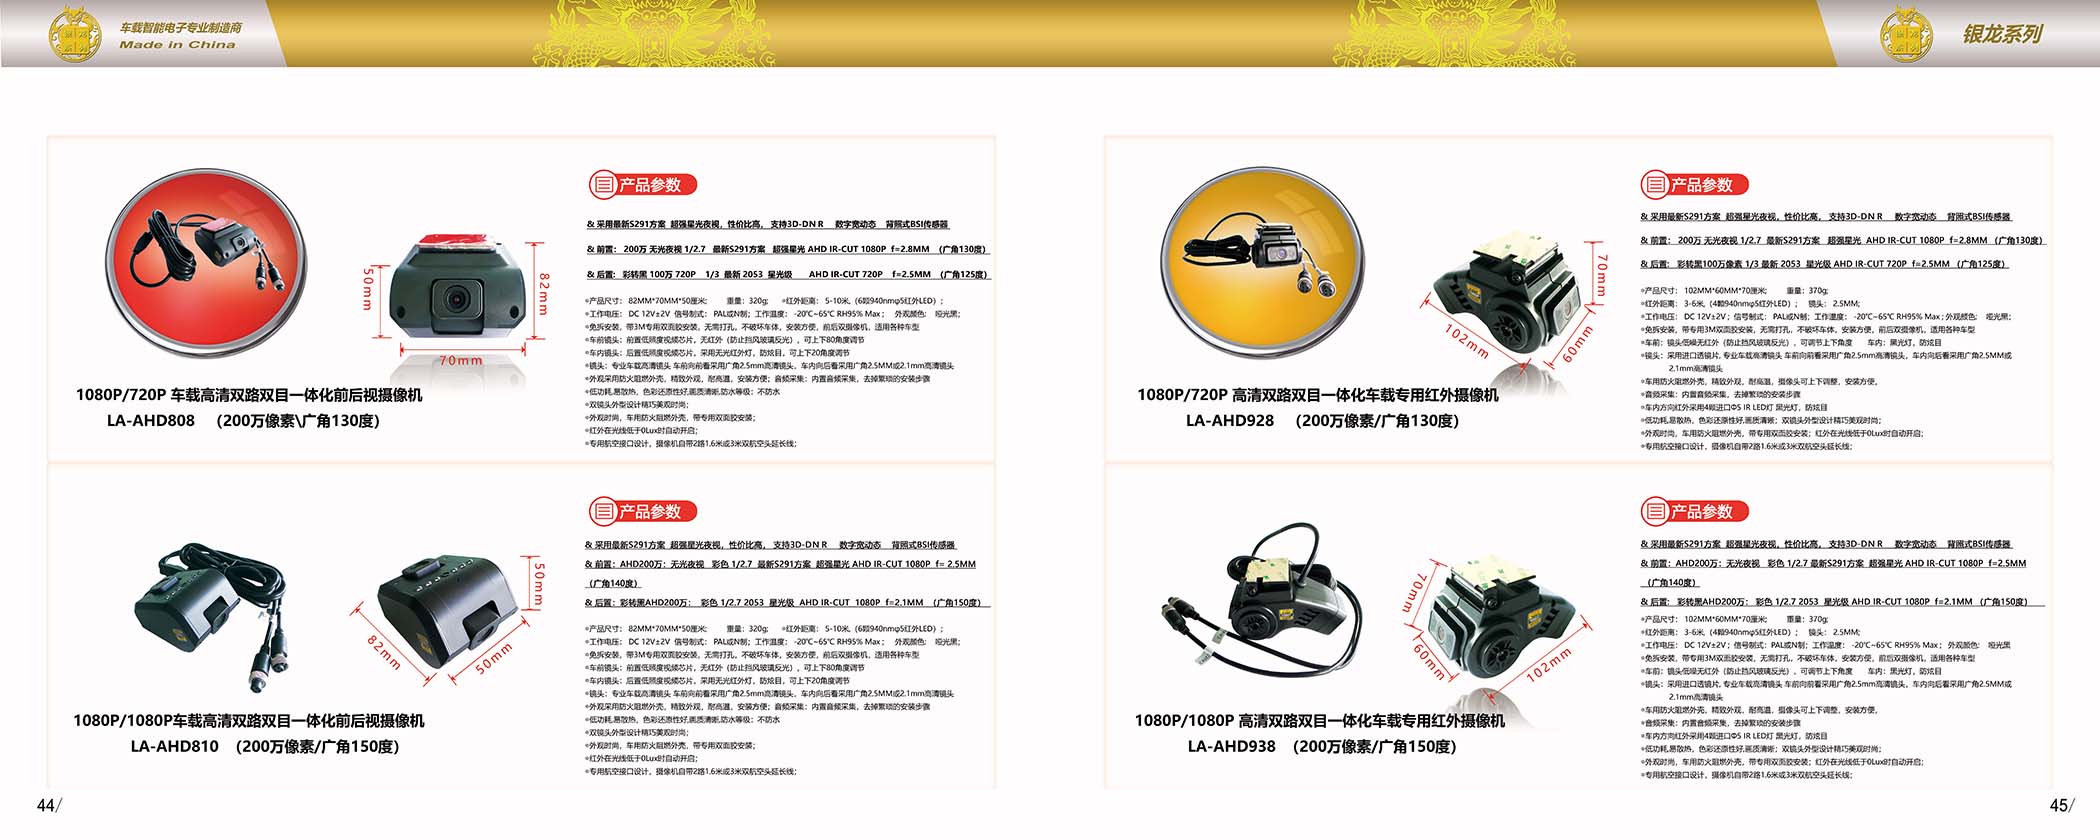 龙安天下电子-产品宣传画册(图19)